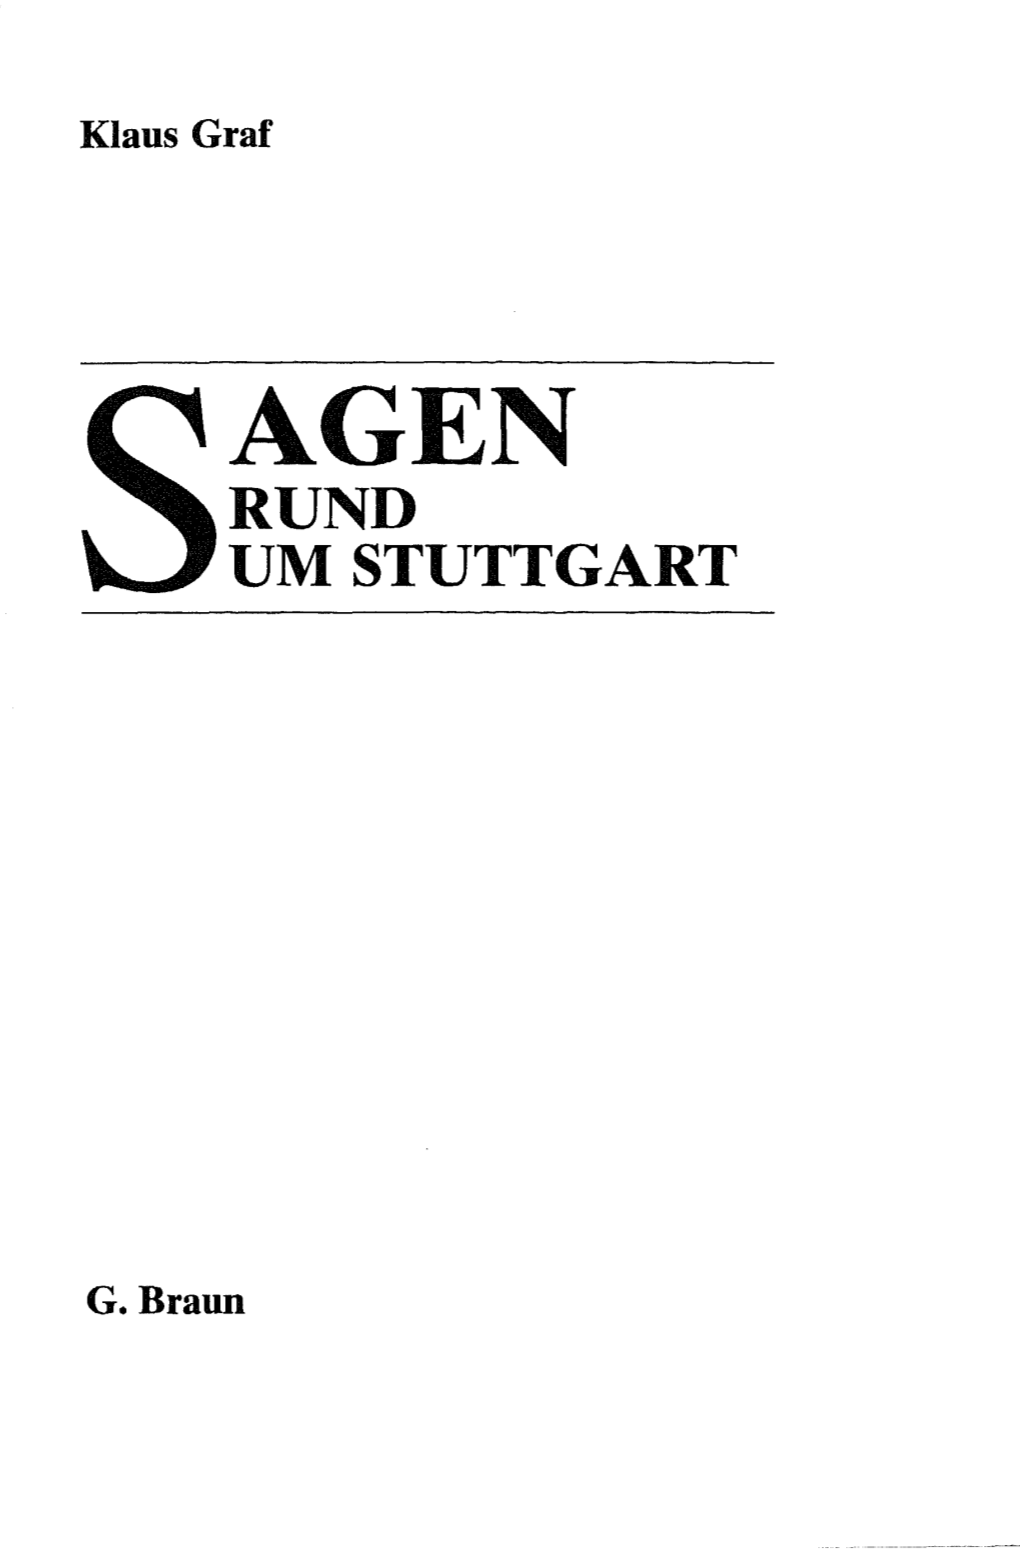 Agen Rund Um Stuttgart